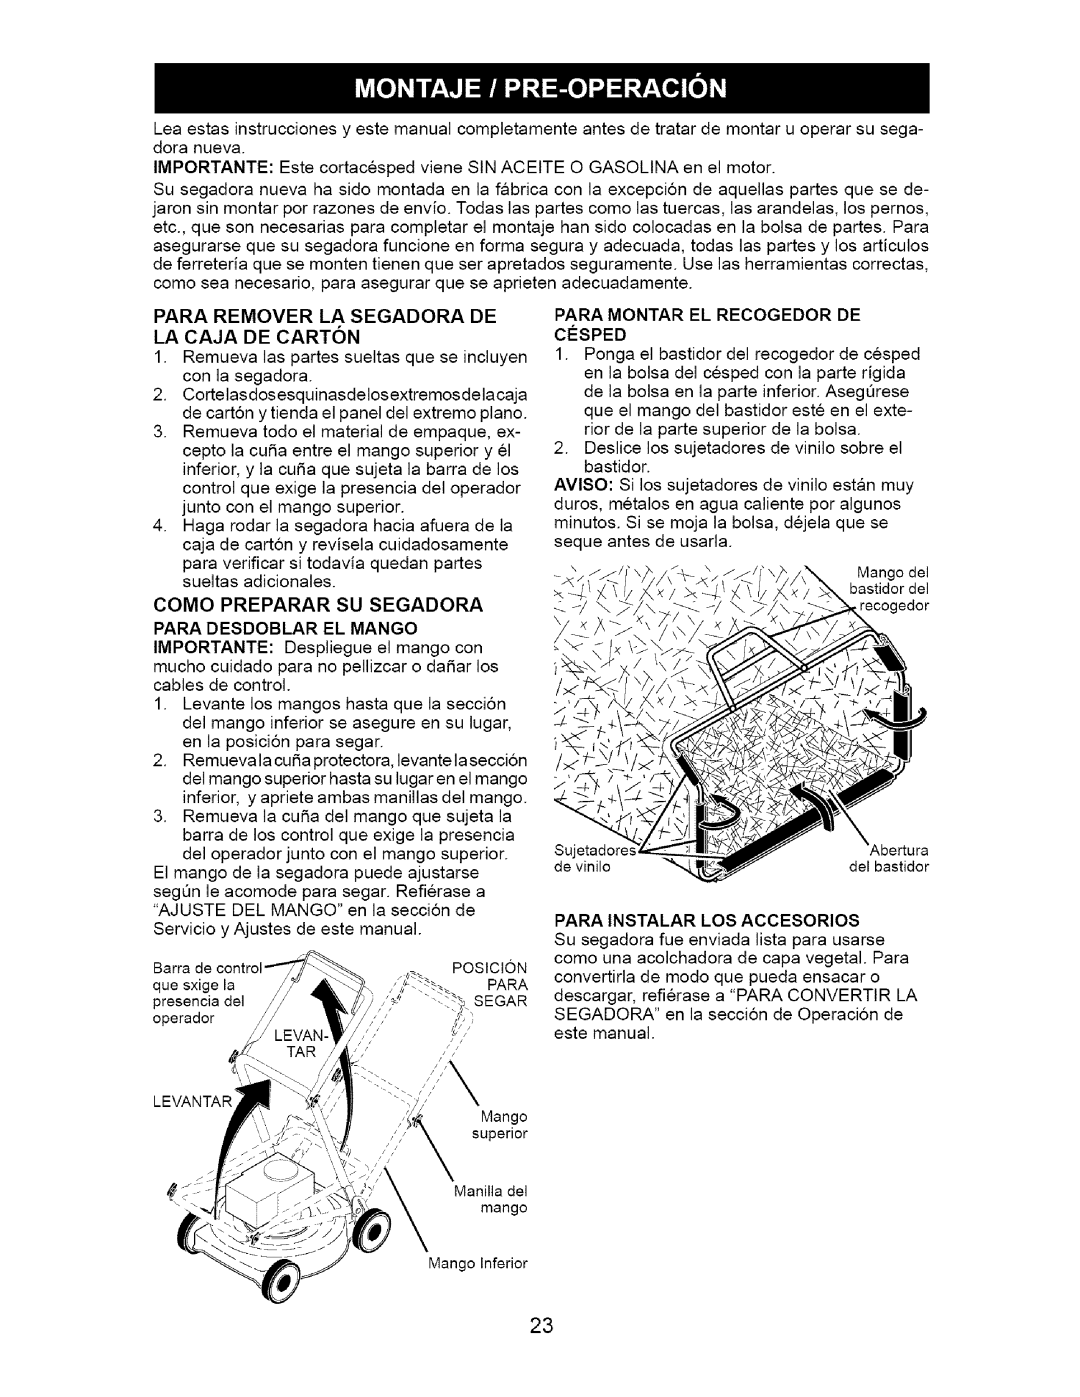 Craftsman 917.37667 owner manual Para Remover La Segadora De La Caja De Carton, Para Desdoblar El Mango 